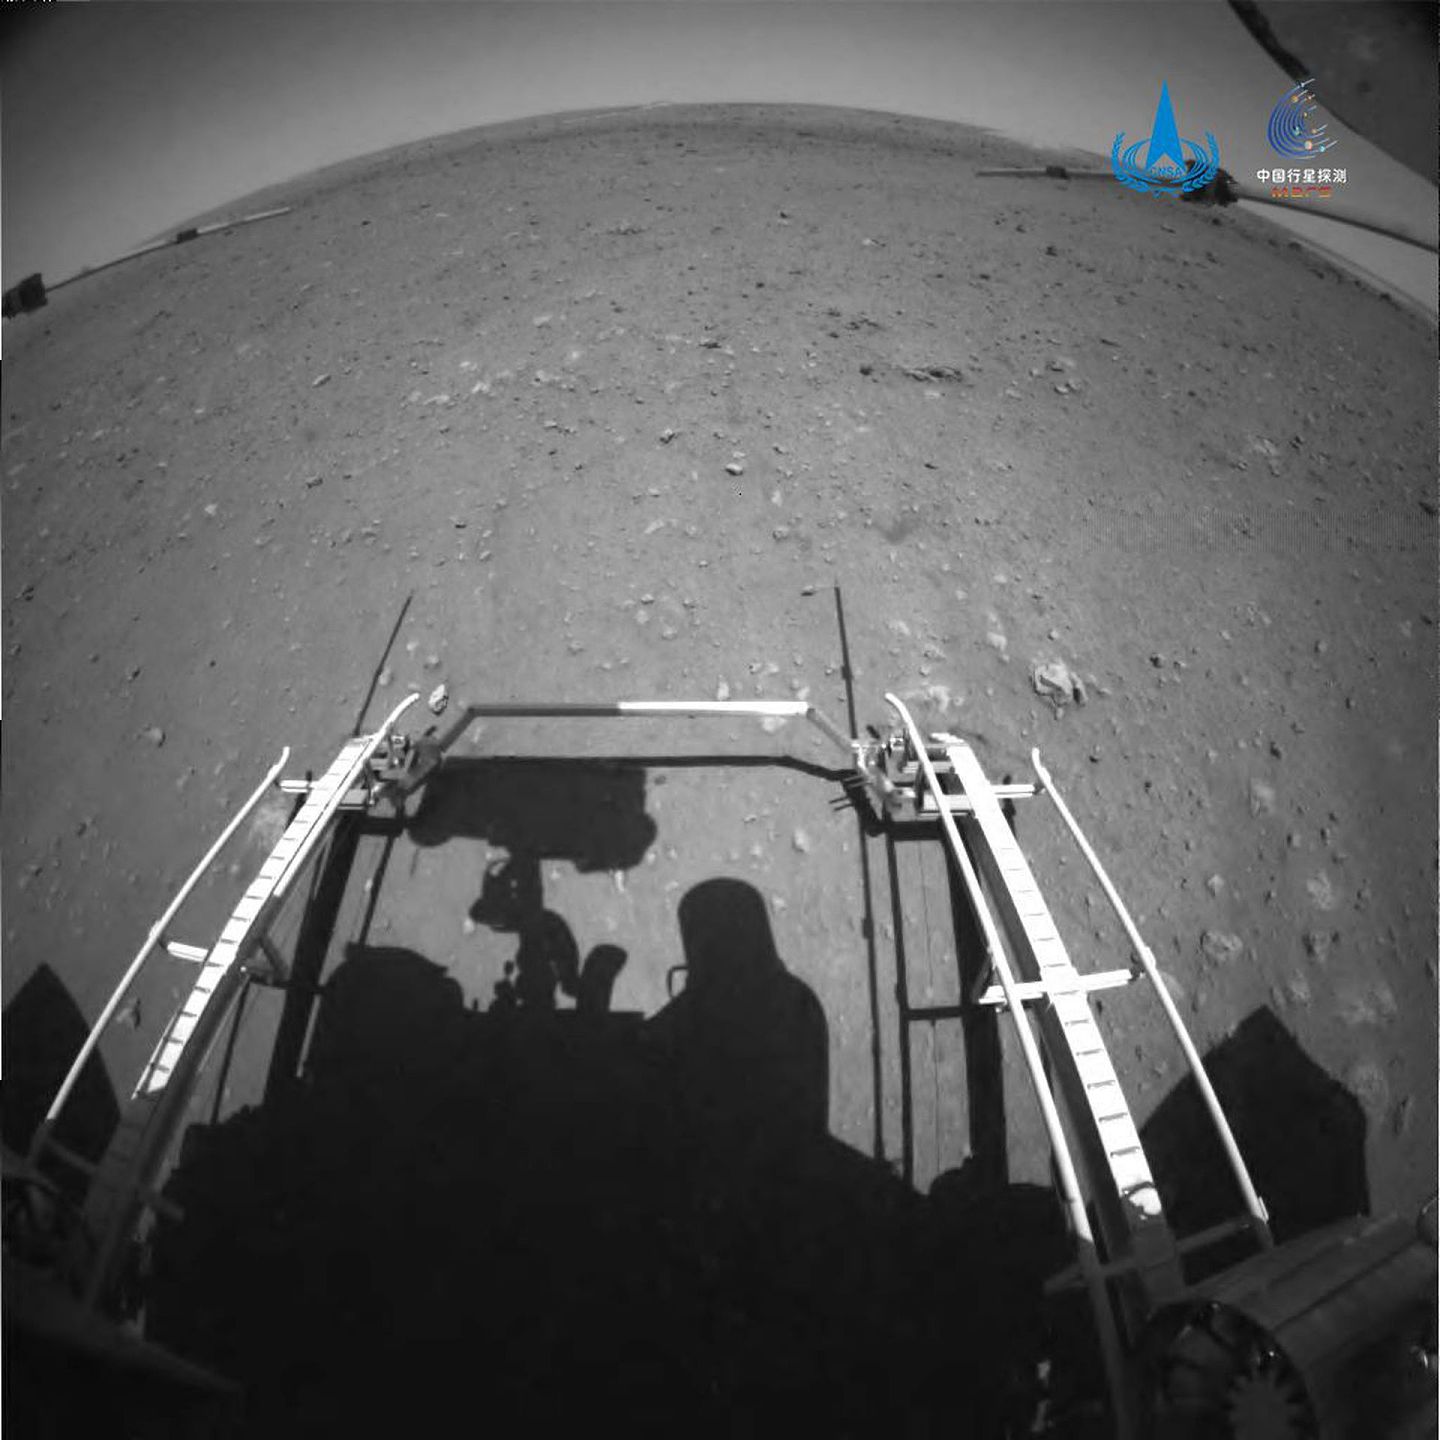 2021年5月22日10时40分，“祝融号”火星车已安全驶离着陆平台，到达火星表面，开始巡视探测。这是由前避障相机拍摄的图片。（中国国家航天局）